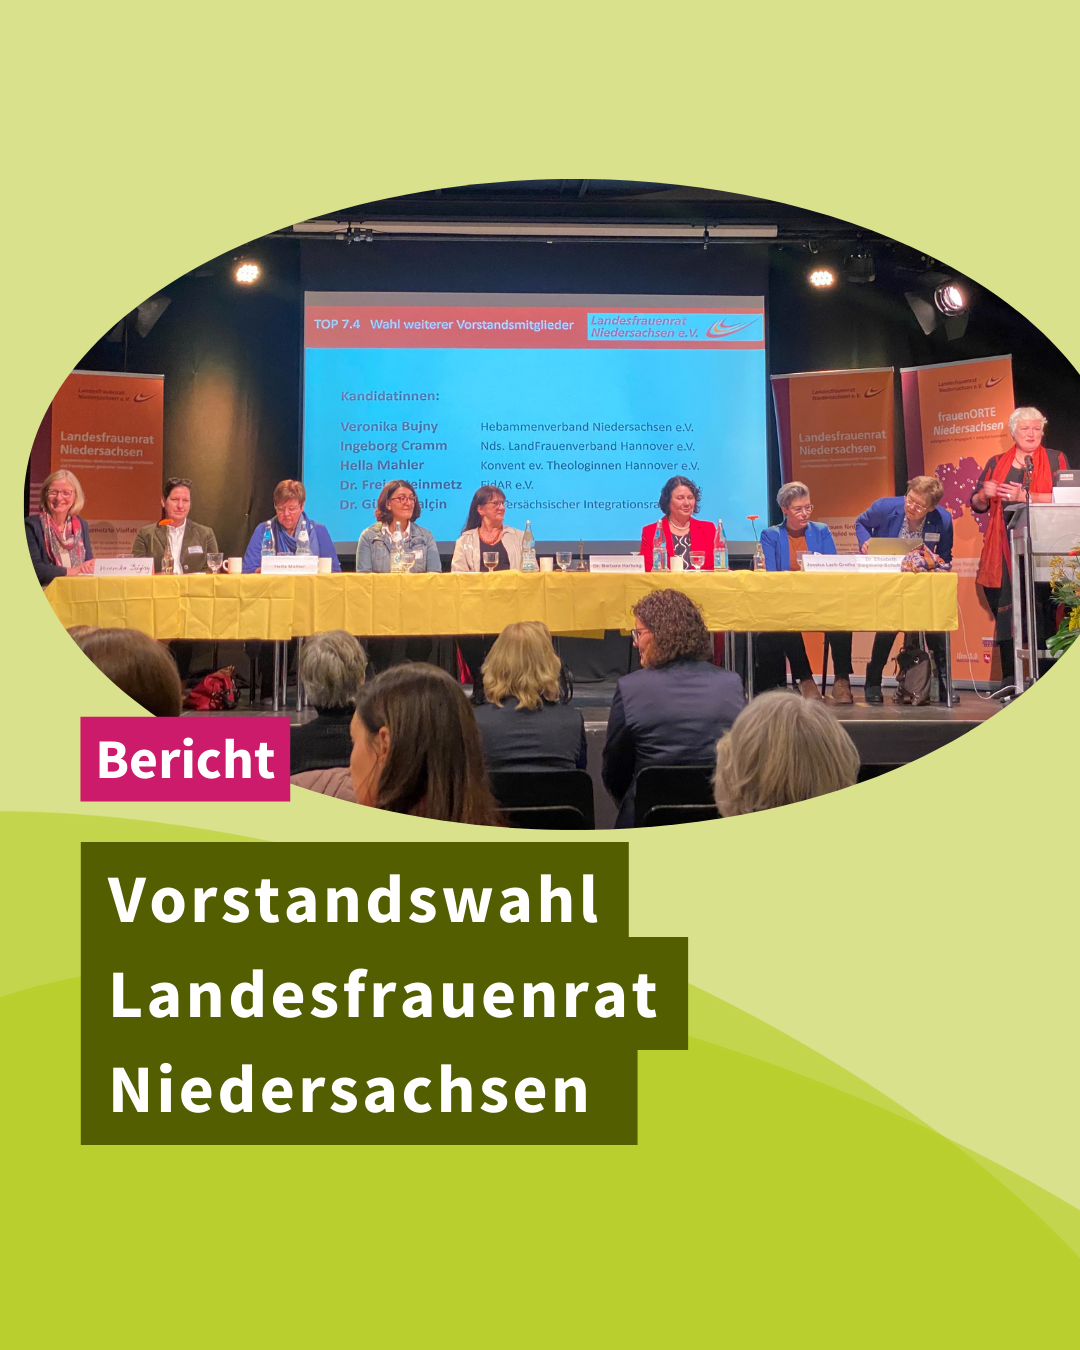 Neuer Vorstand beim Landesfrauenrat Niedersachsen gewählt